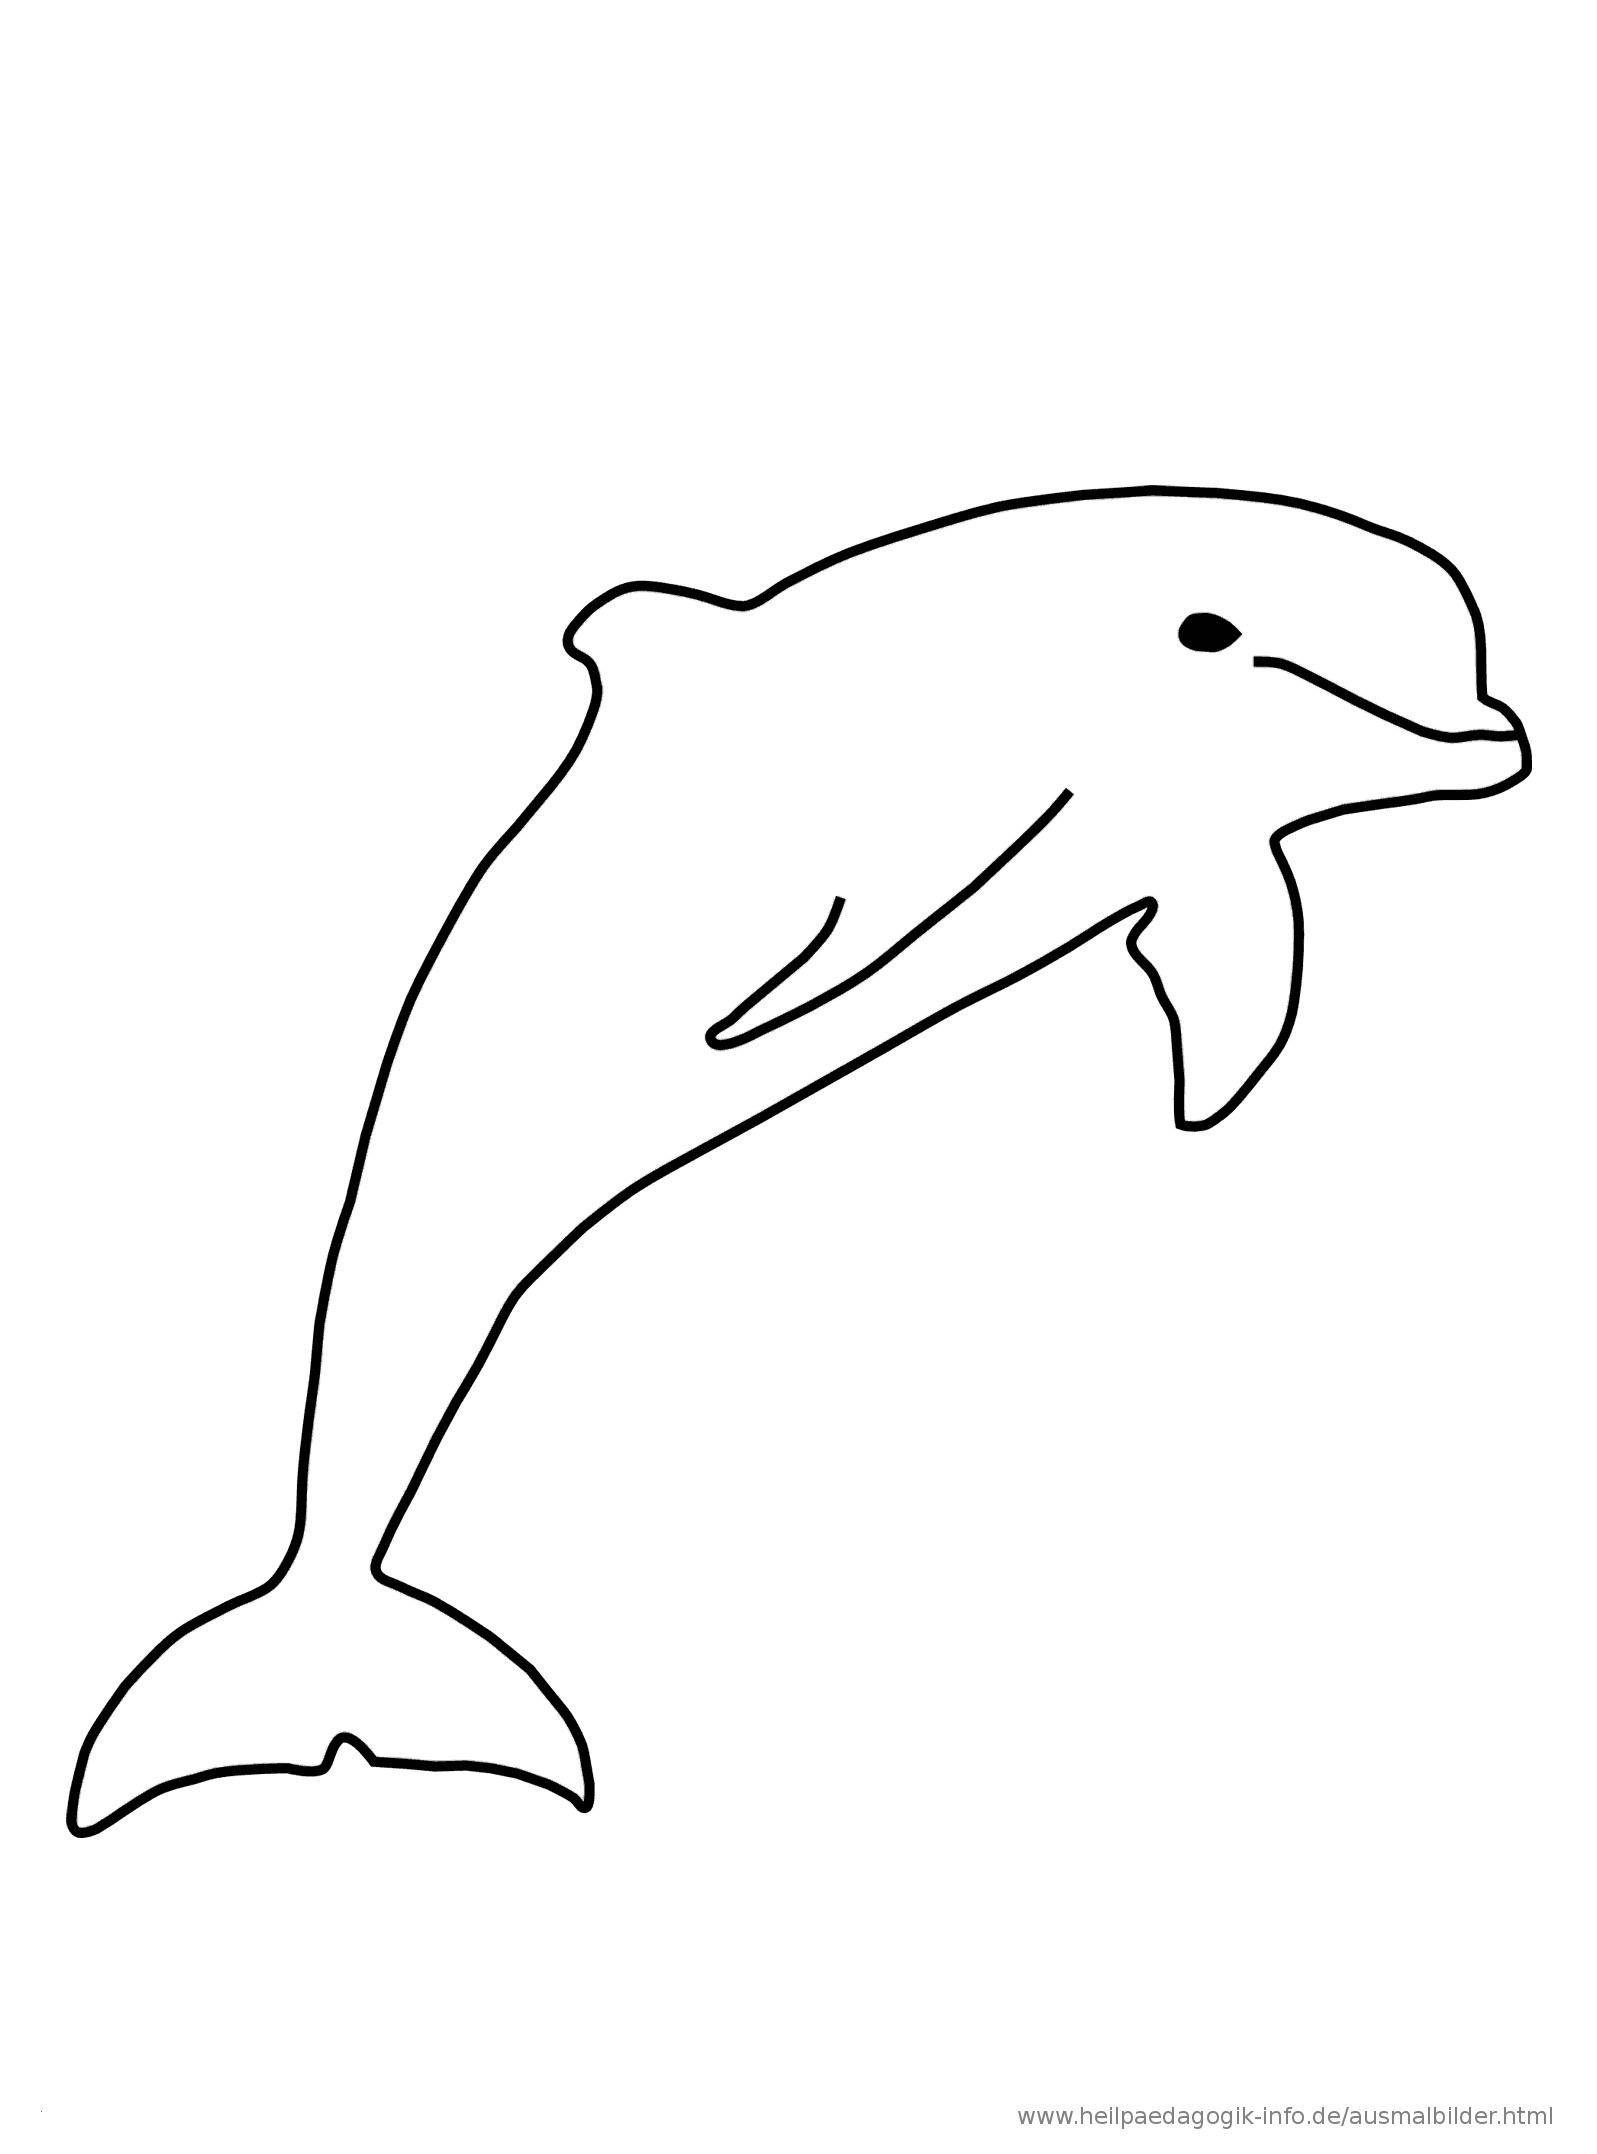 Malvorlagen Delfine Und Wassertiere Ausmalbilder
 Malvorlagen Delfine Und Wassertiere Ausmalbilder